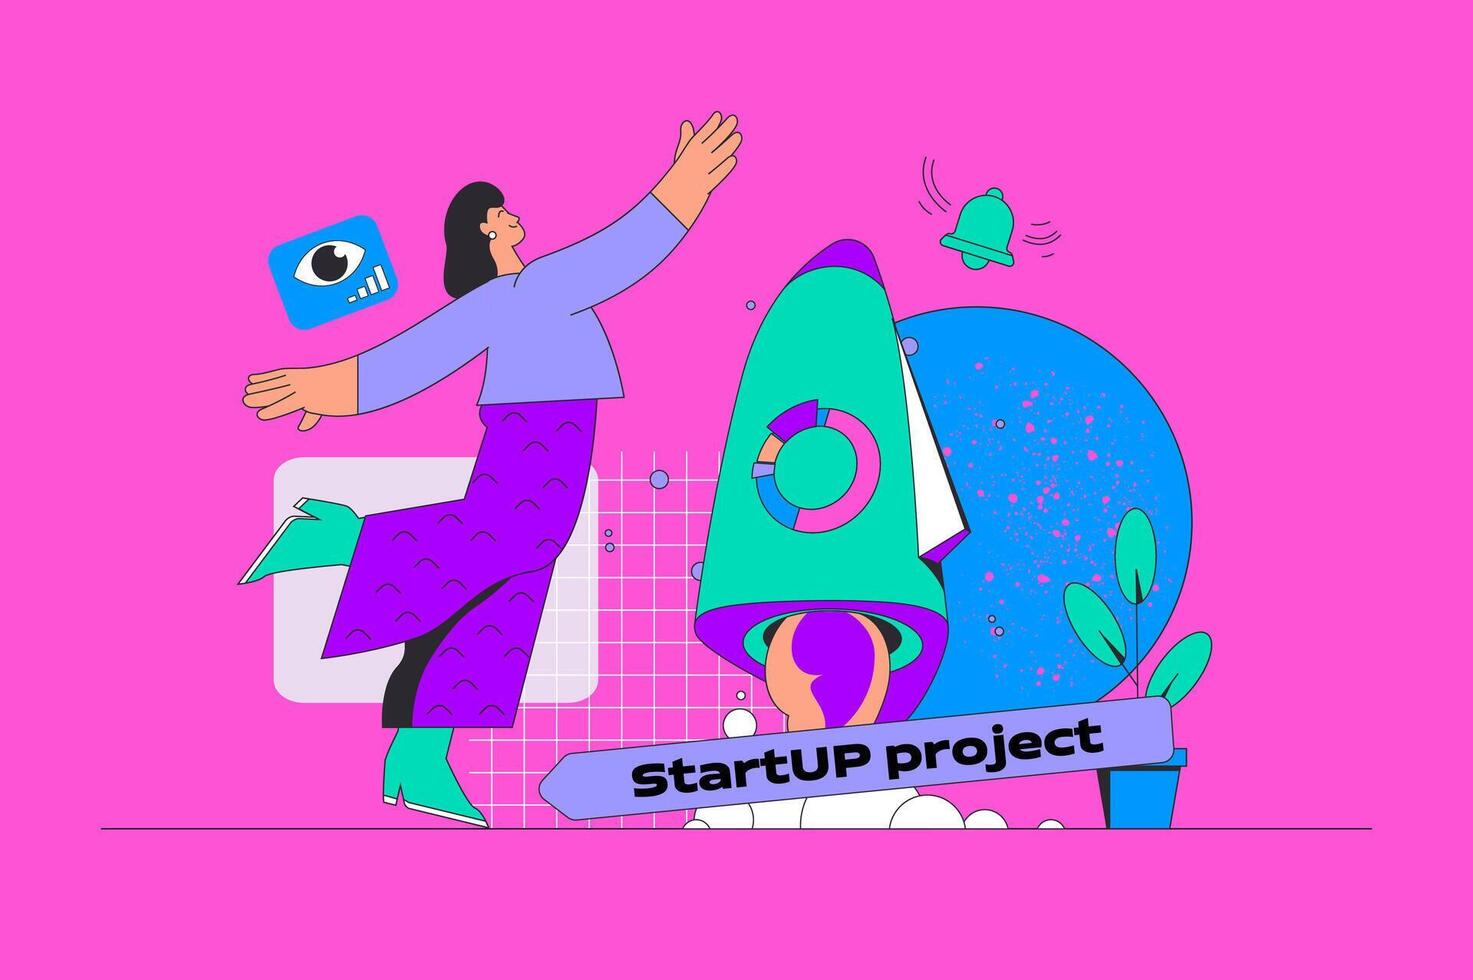 börja projekt begrepp i modern platt design för webb. kvinna entreprenör skapande och sjösättning ny företag, investera i företag. illustration för social media baner, marknadsföring material. vektor